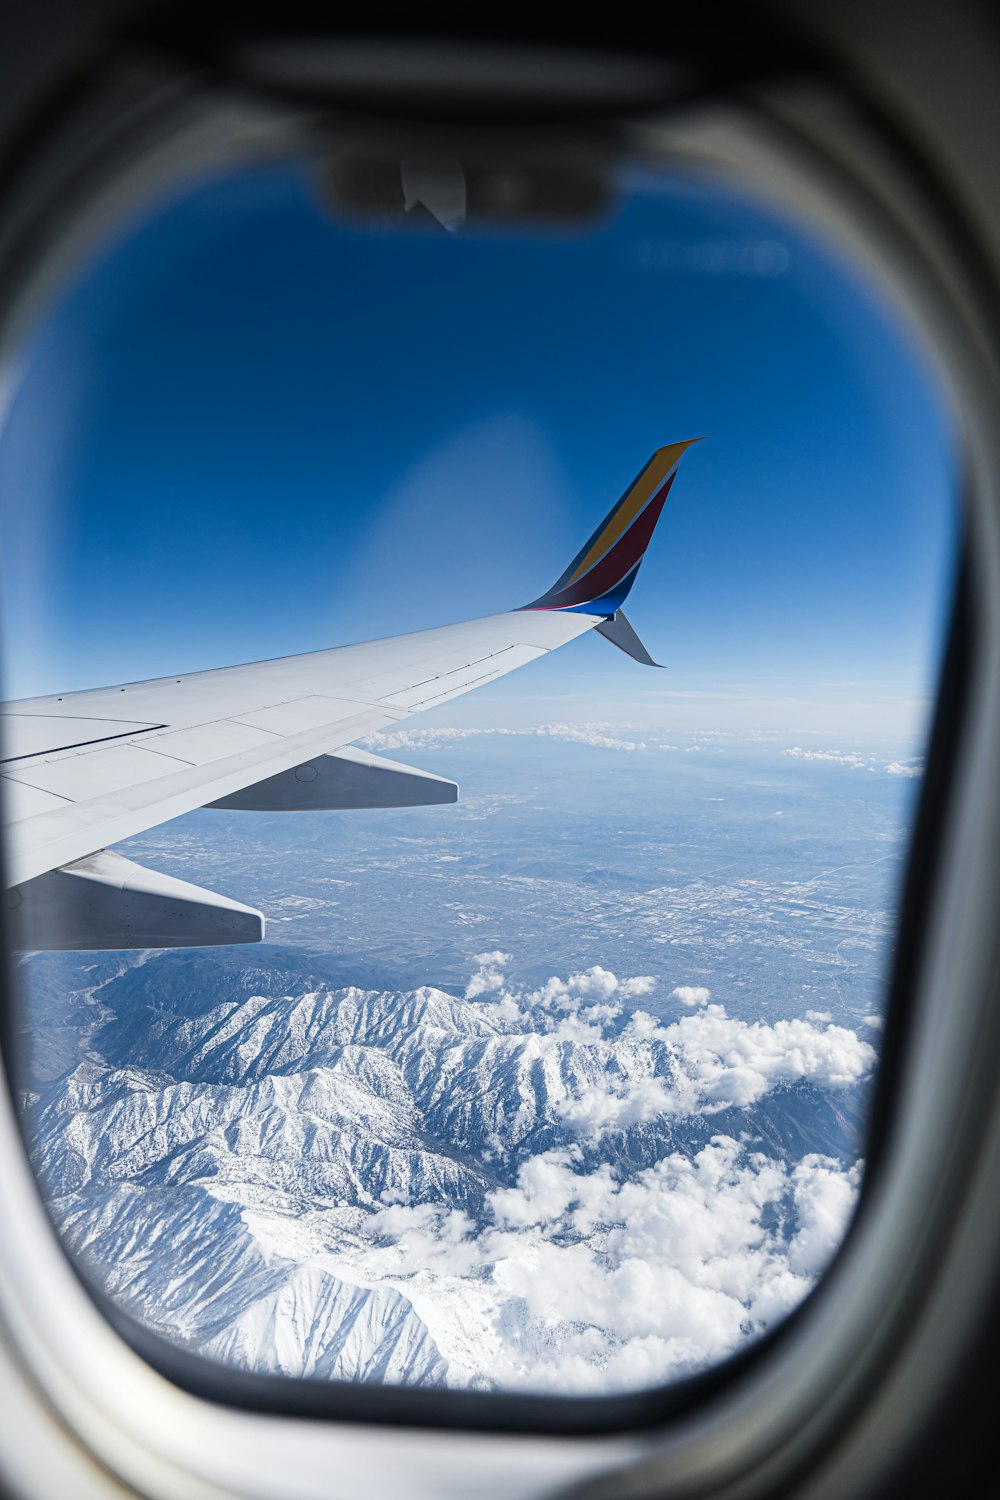 Vue de l’aile d’un avion au-dessus d’une chaîne de montagnes